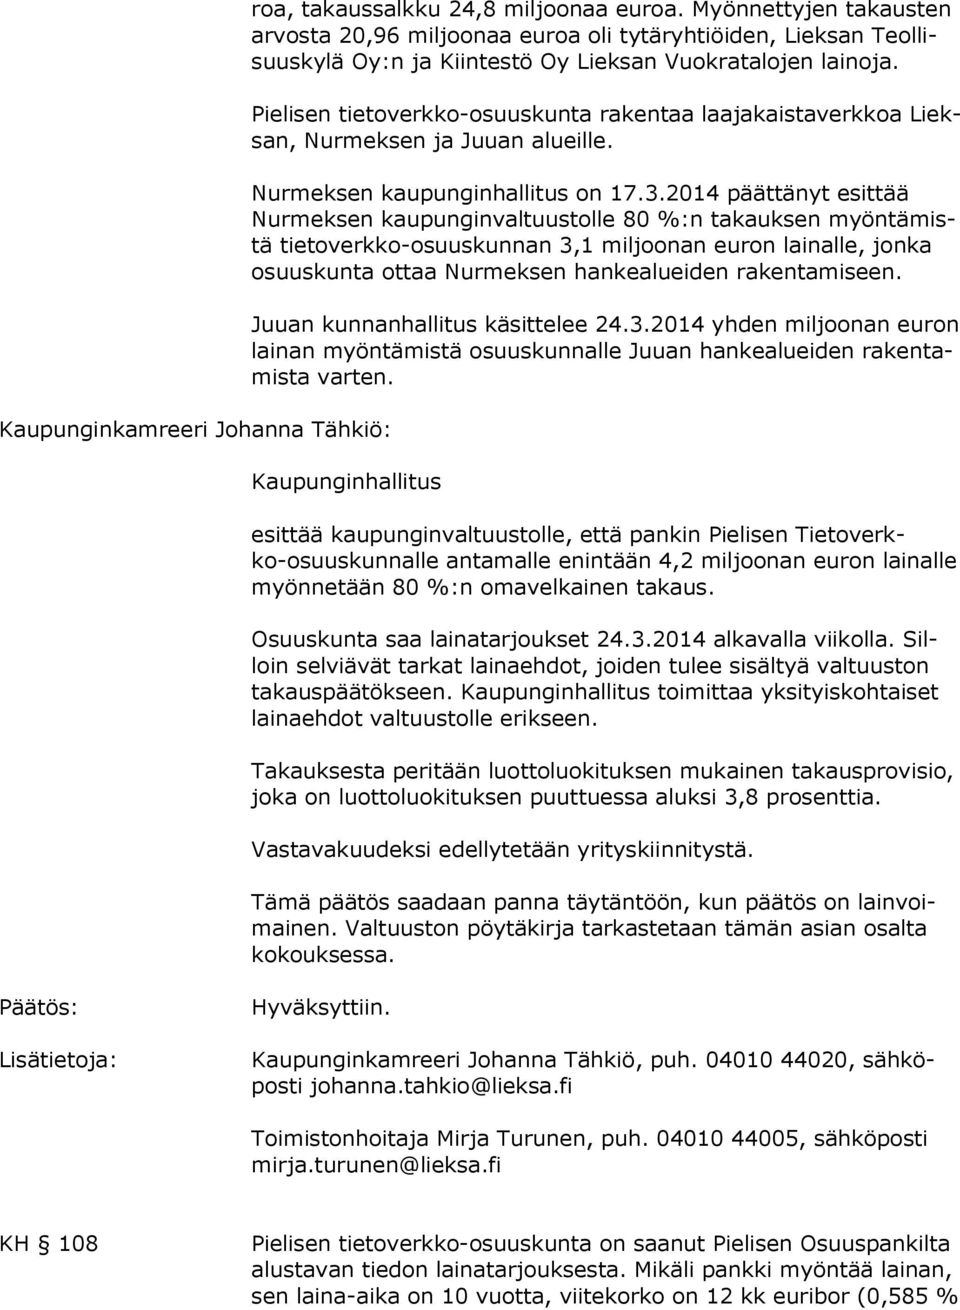 Pielisen tietoverkko-osuuskunta rakentaa laajakaistaverkkoa Lieksan, Nurmeksen ja Juuan alueille. Nurmeksen kaupunginhallitus on 17.3.